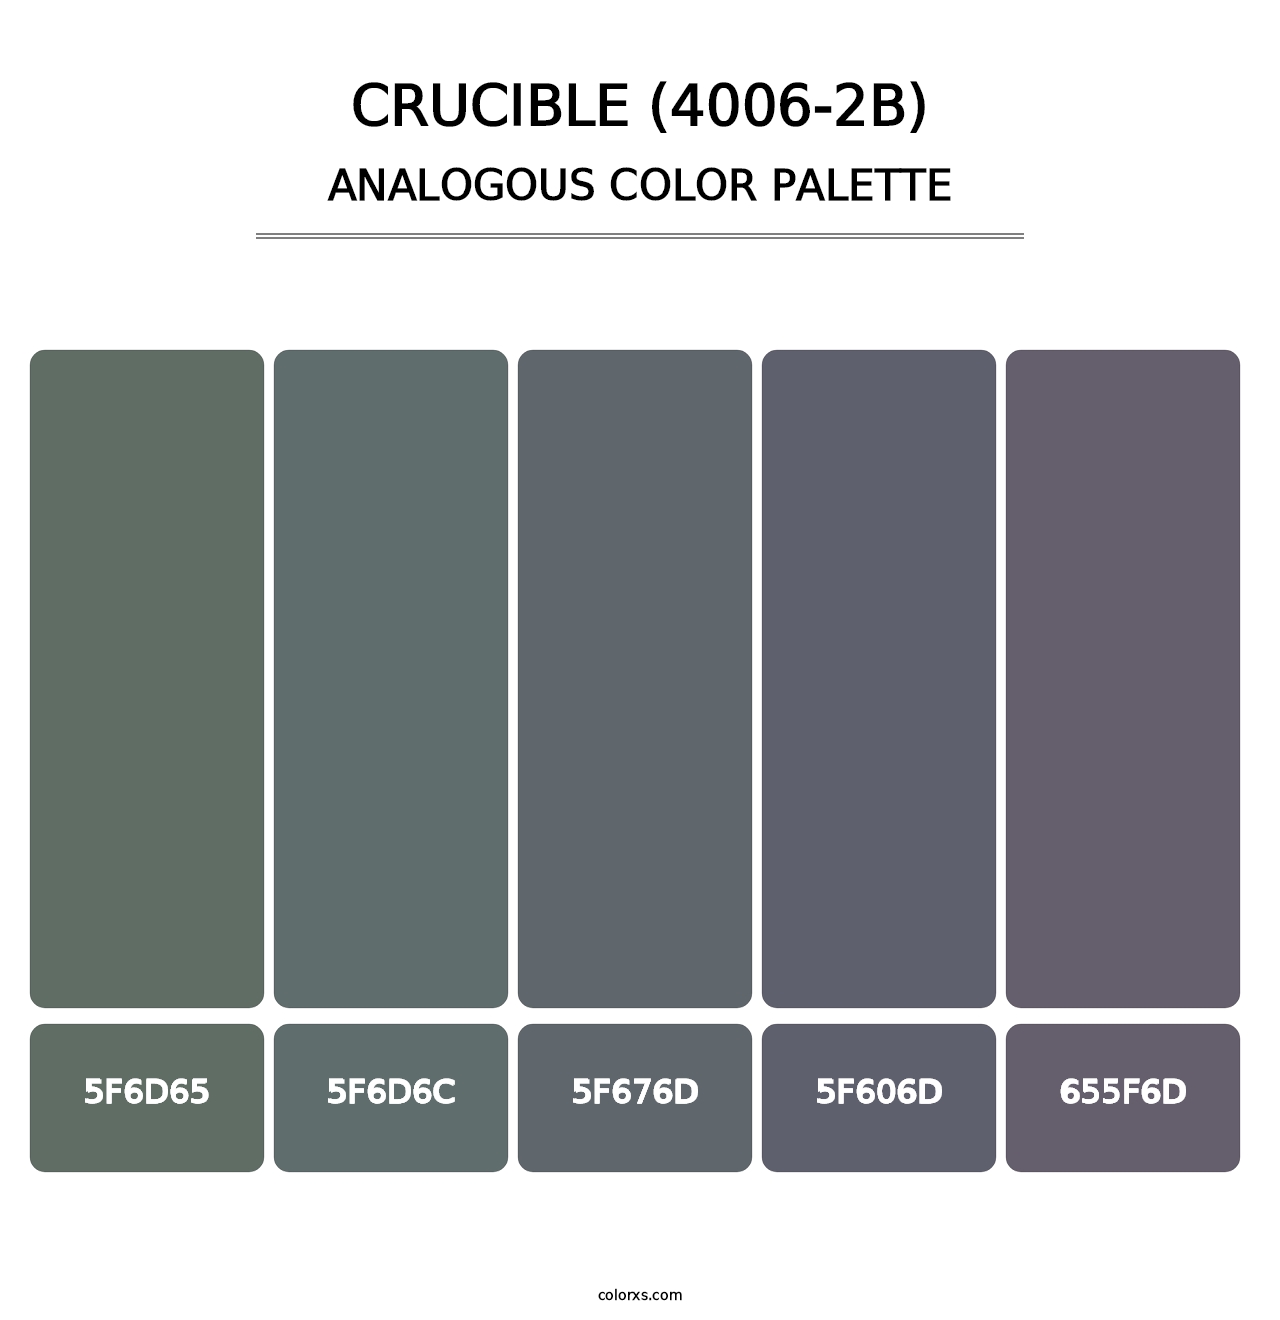 Crucible (4006-2B) - Analogous Color Palette